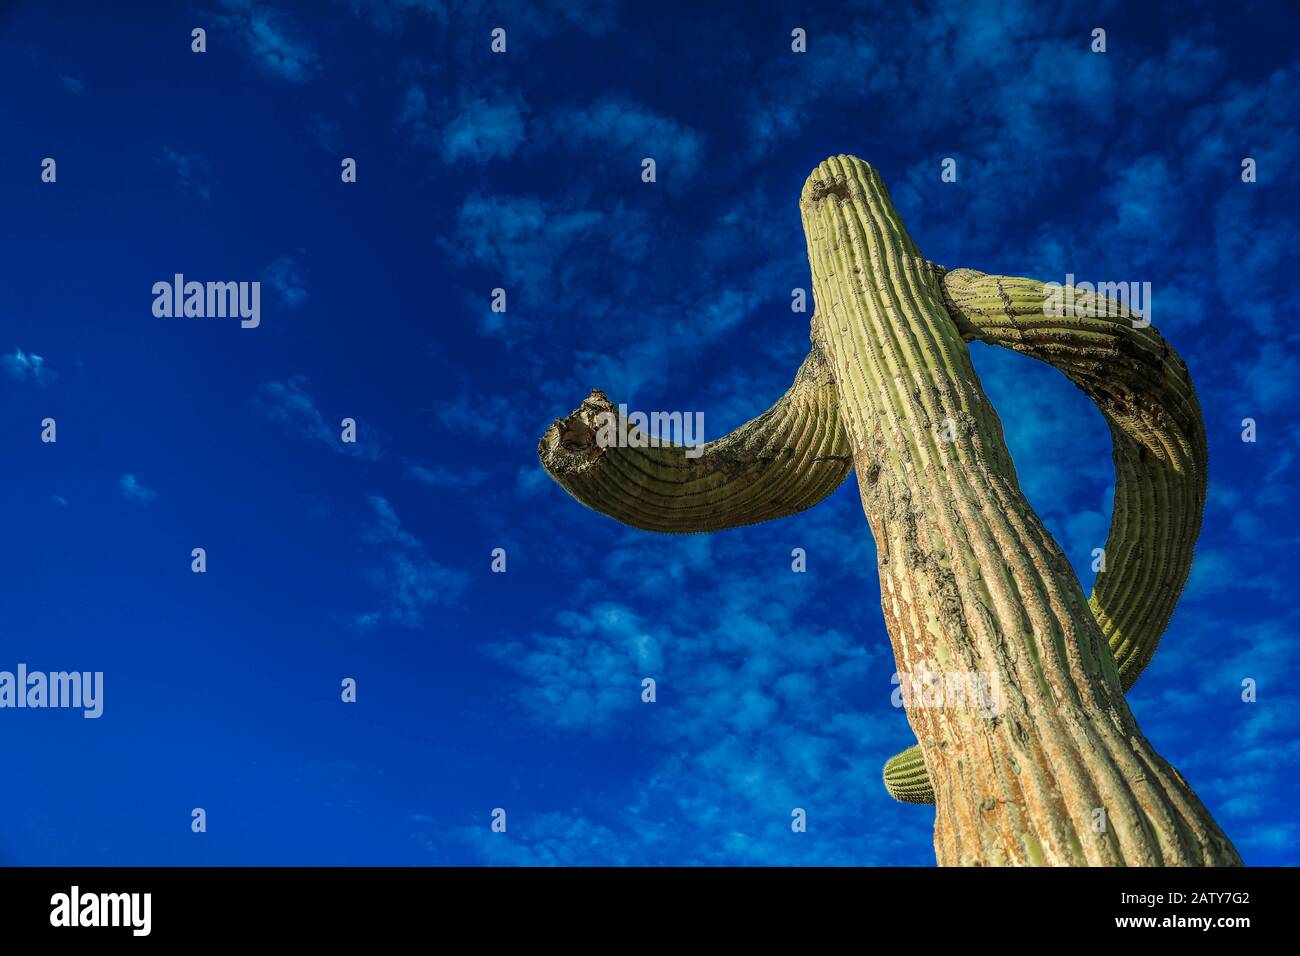 Saguaro o Sahuaro (Carnegiea gigantea) a forma di uomo. Tipico cactus colonnare del deserto di sonora, Messico. monotípicoc è una specie di maggiori dimensioni tra i cactus .... PAROLE chiave: Surreale, alieno, extraterrestre, strano, forma, malformazione, ritorto, brazes di albero, spine ossee, rare, intrecciate, storte, storte. Saguaro o sahuaro (Carnegiea gigantea) con forma de un hombre. Cactus columnar típico del Desierto de sonora, Messico. monotípicoc es una especies de Mayor entre porte cactáceas....ENTRAS DE PORTE... surreale, alienigena, extraterreste, extraño, forma, malformacion, retorcido, Foto Stock